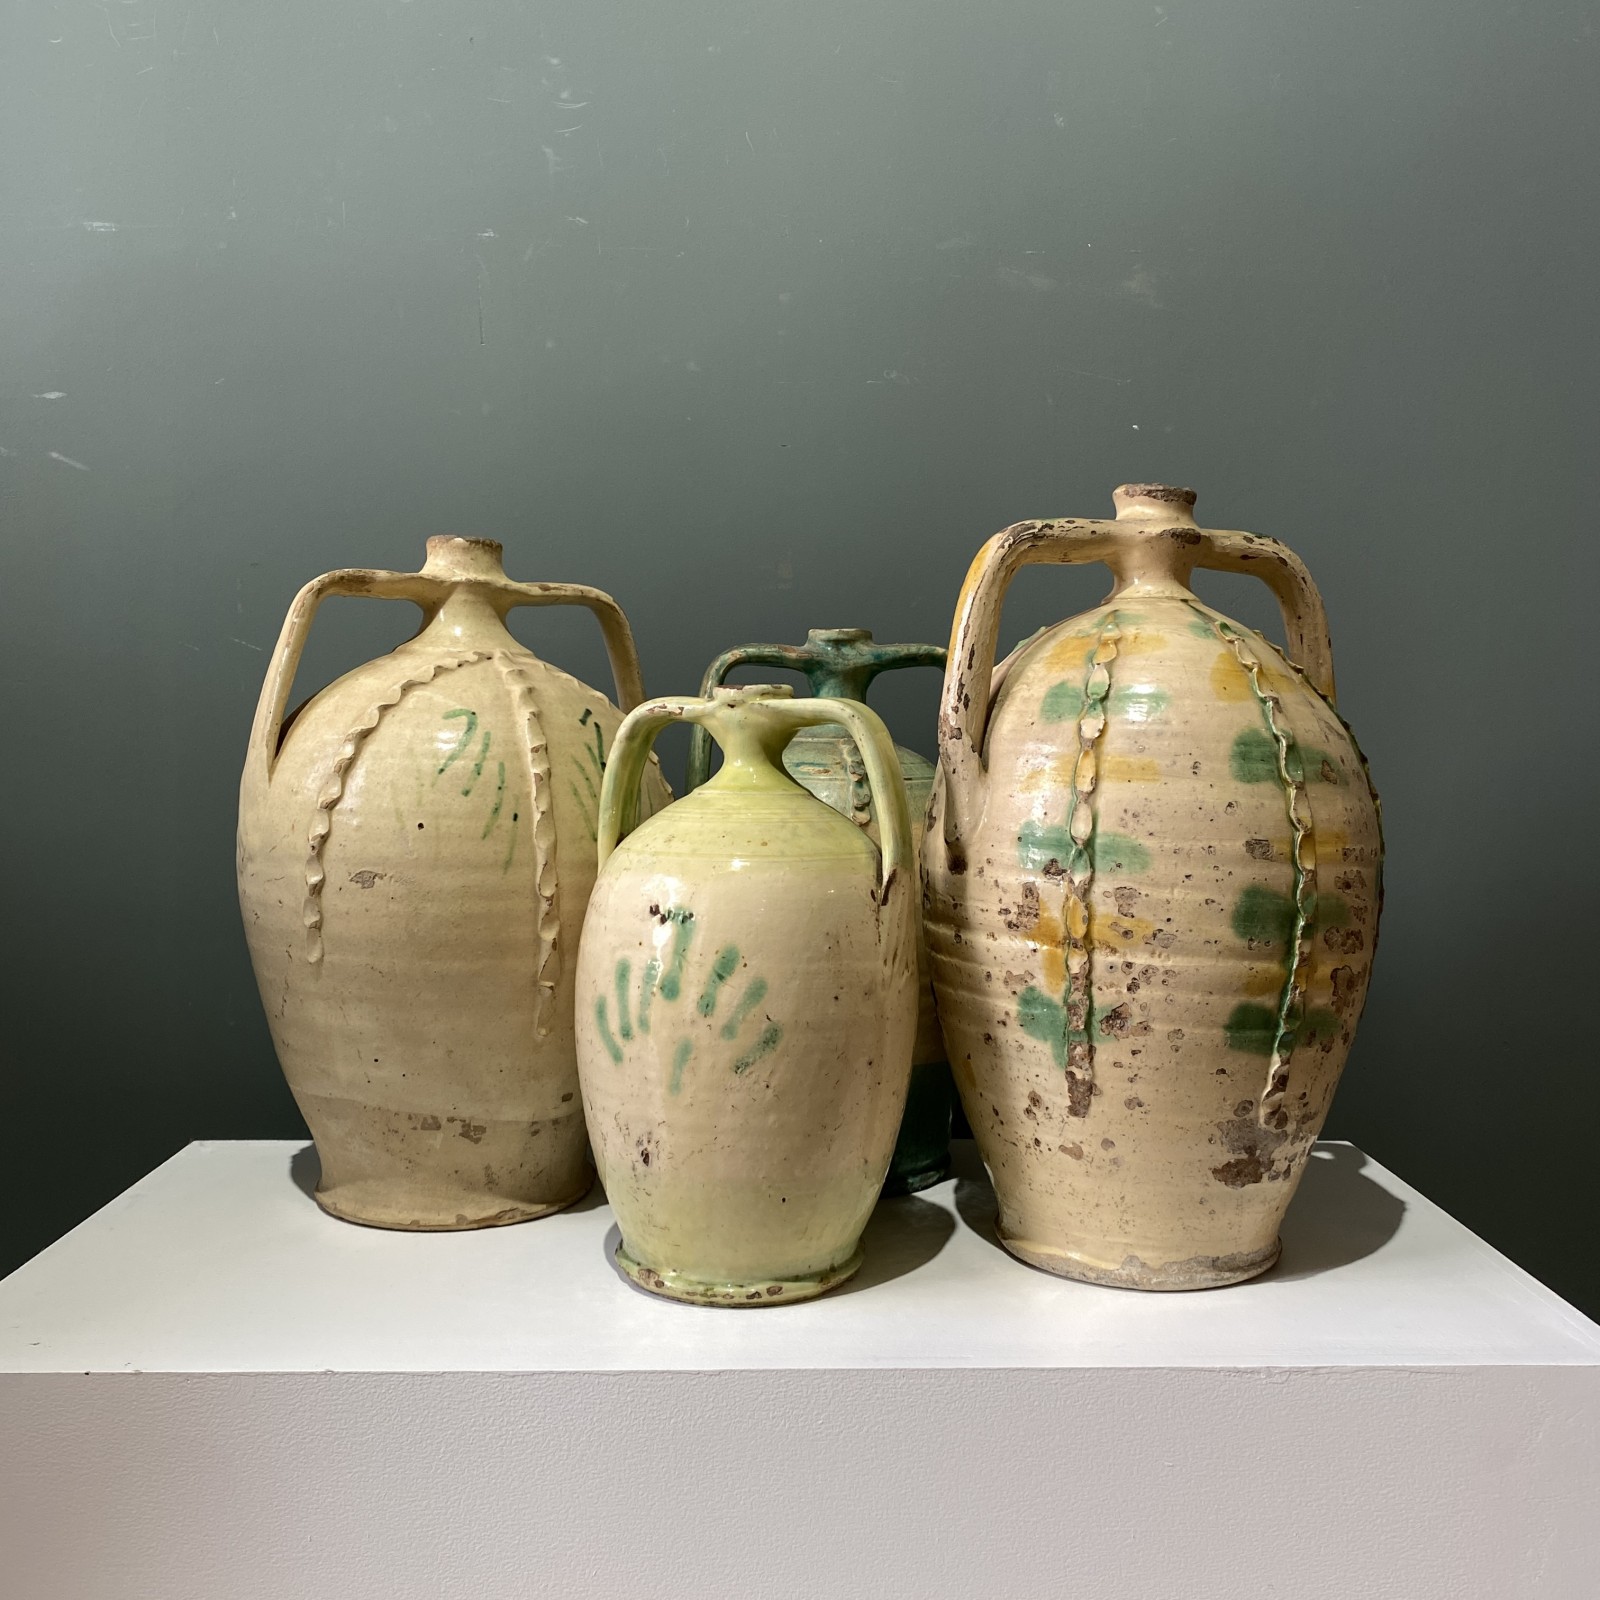 18th century Italian pottery